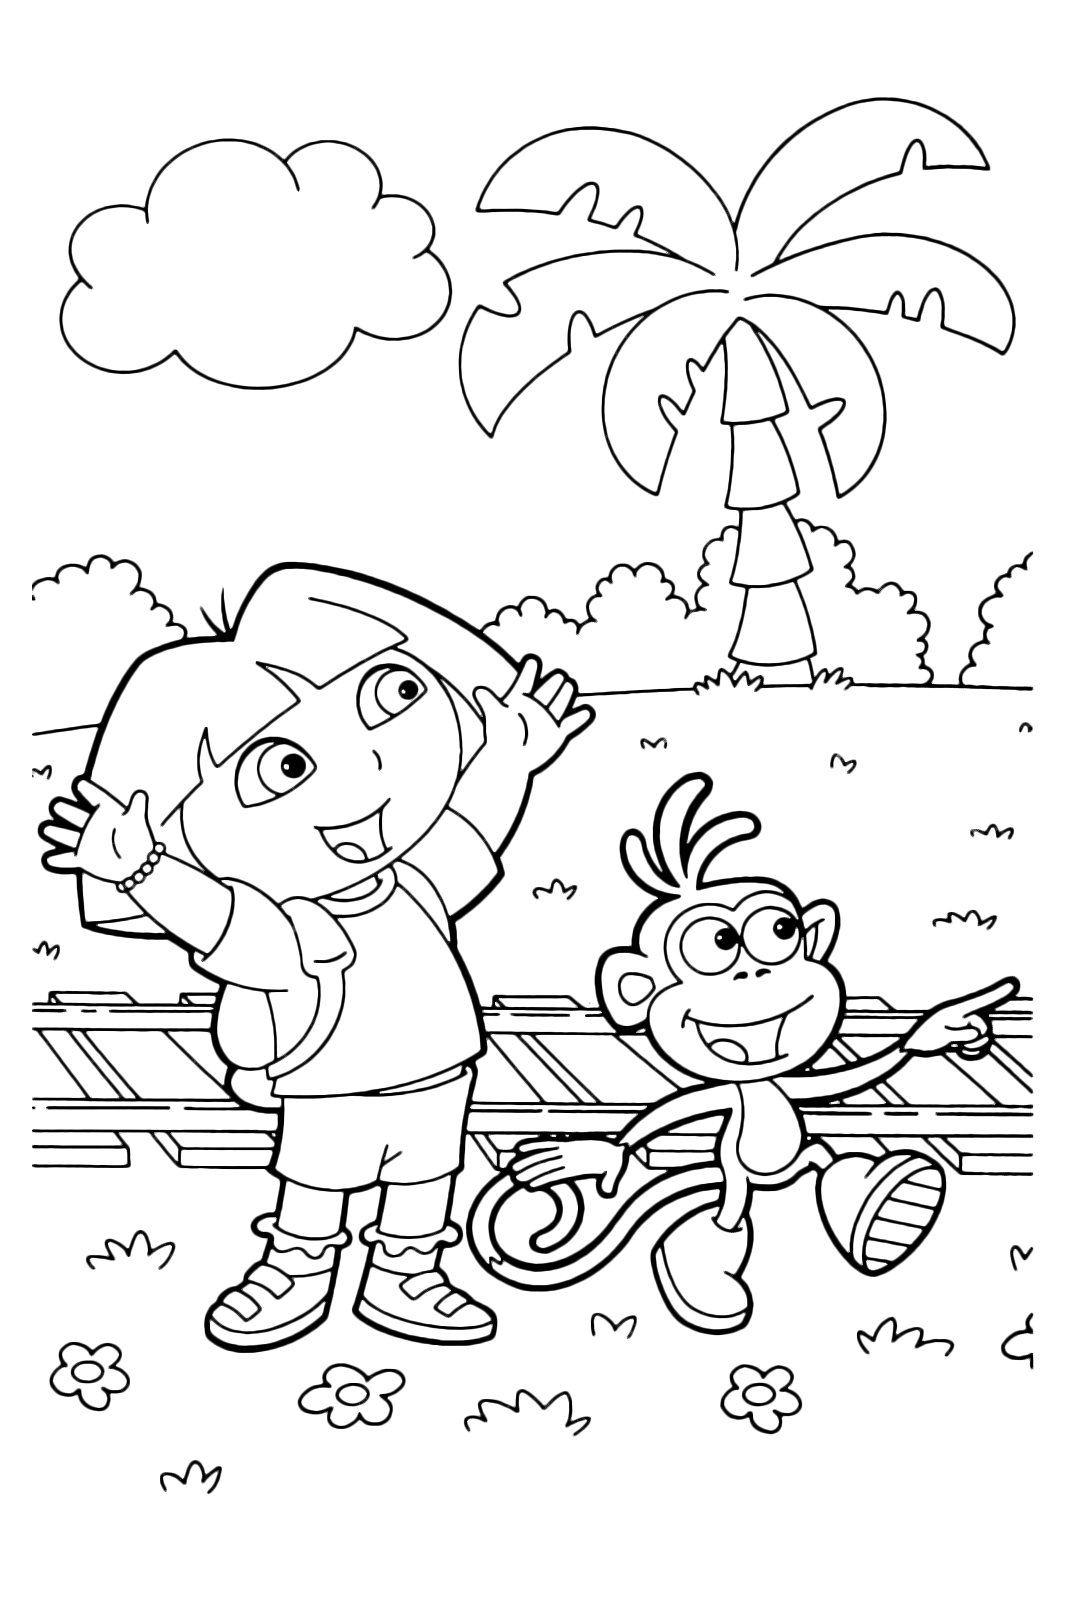 Dora l'esploratrice - Dora e Boots felici perché hanno trovato i binari del treno